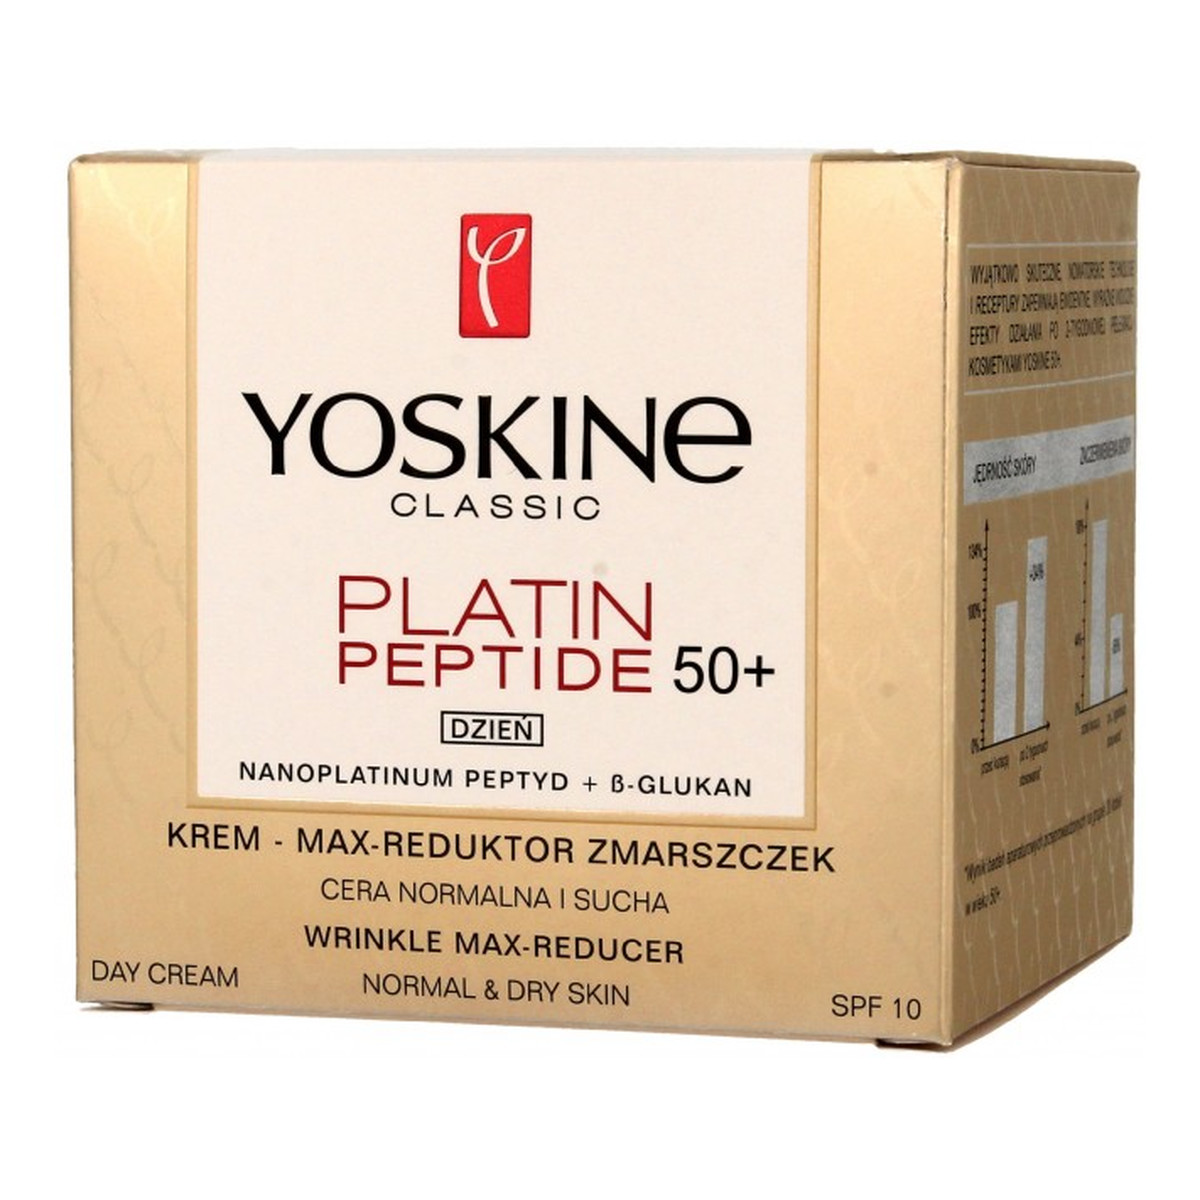 Yoskine Classic Platin Peptide 50+ krem max reduktor zmarszczek do cery normalnej i suchej na dzień 50ml